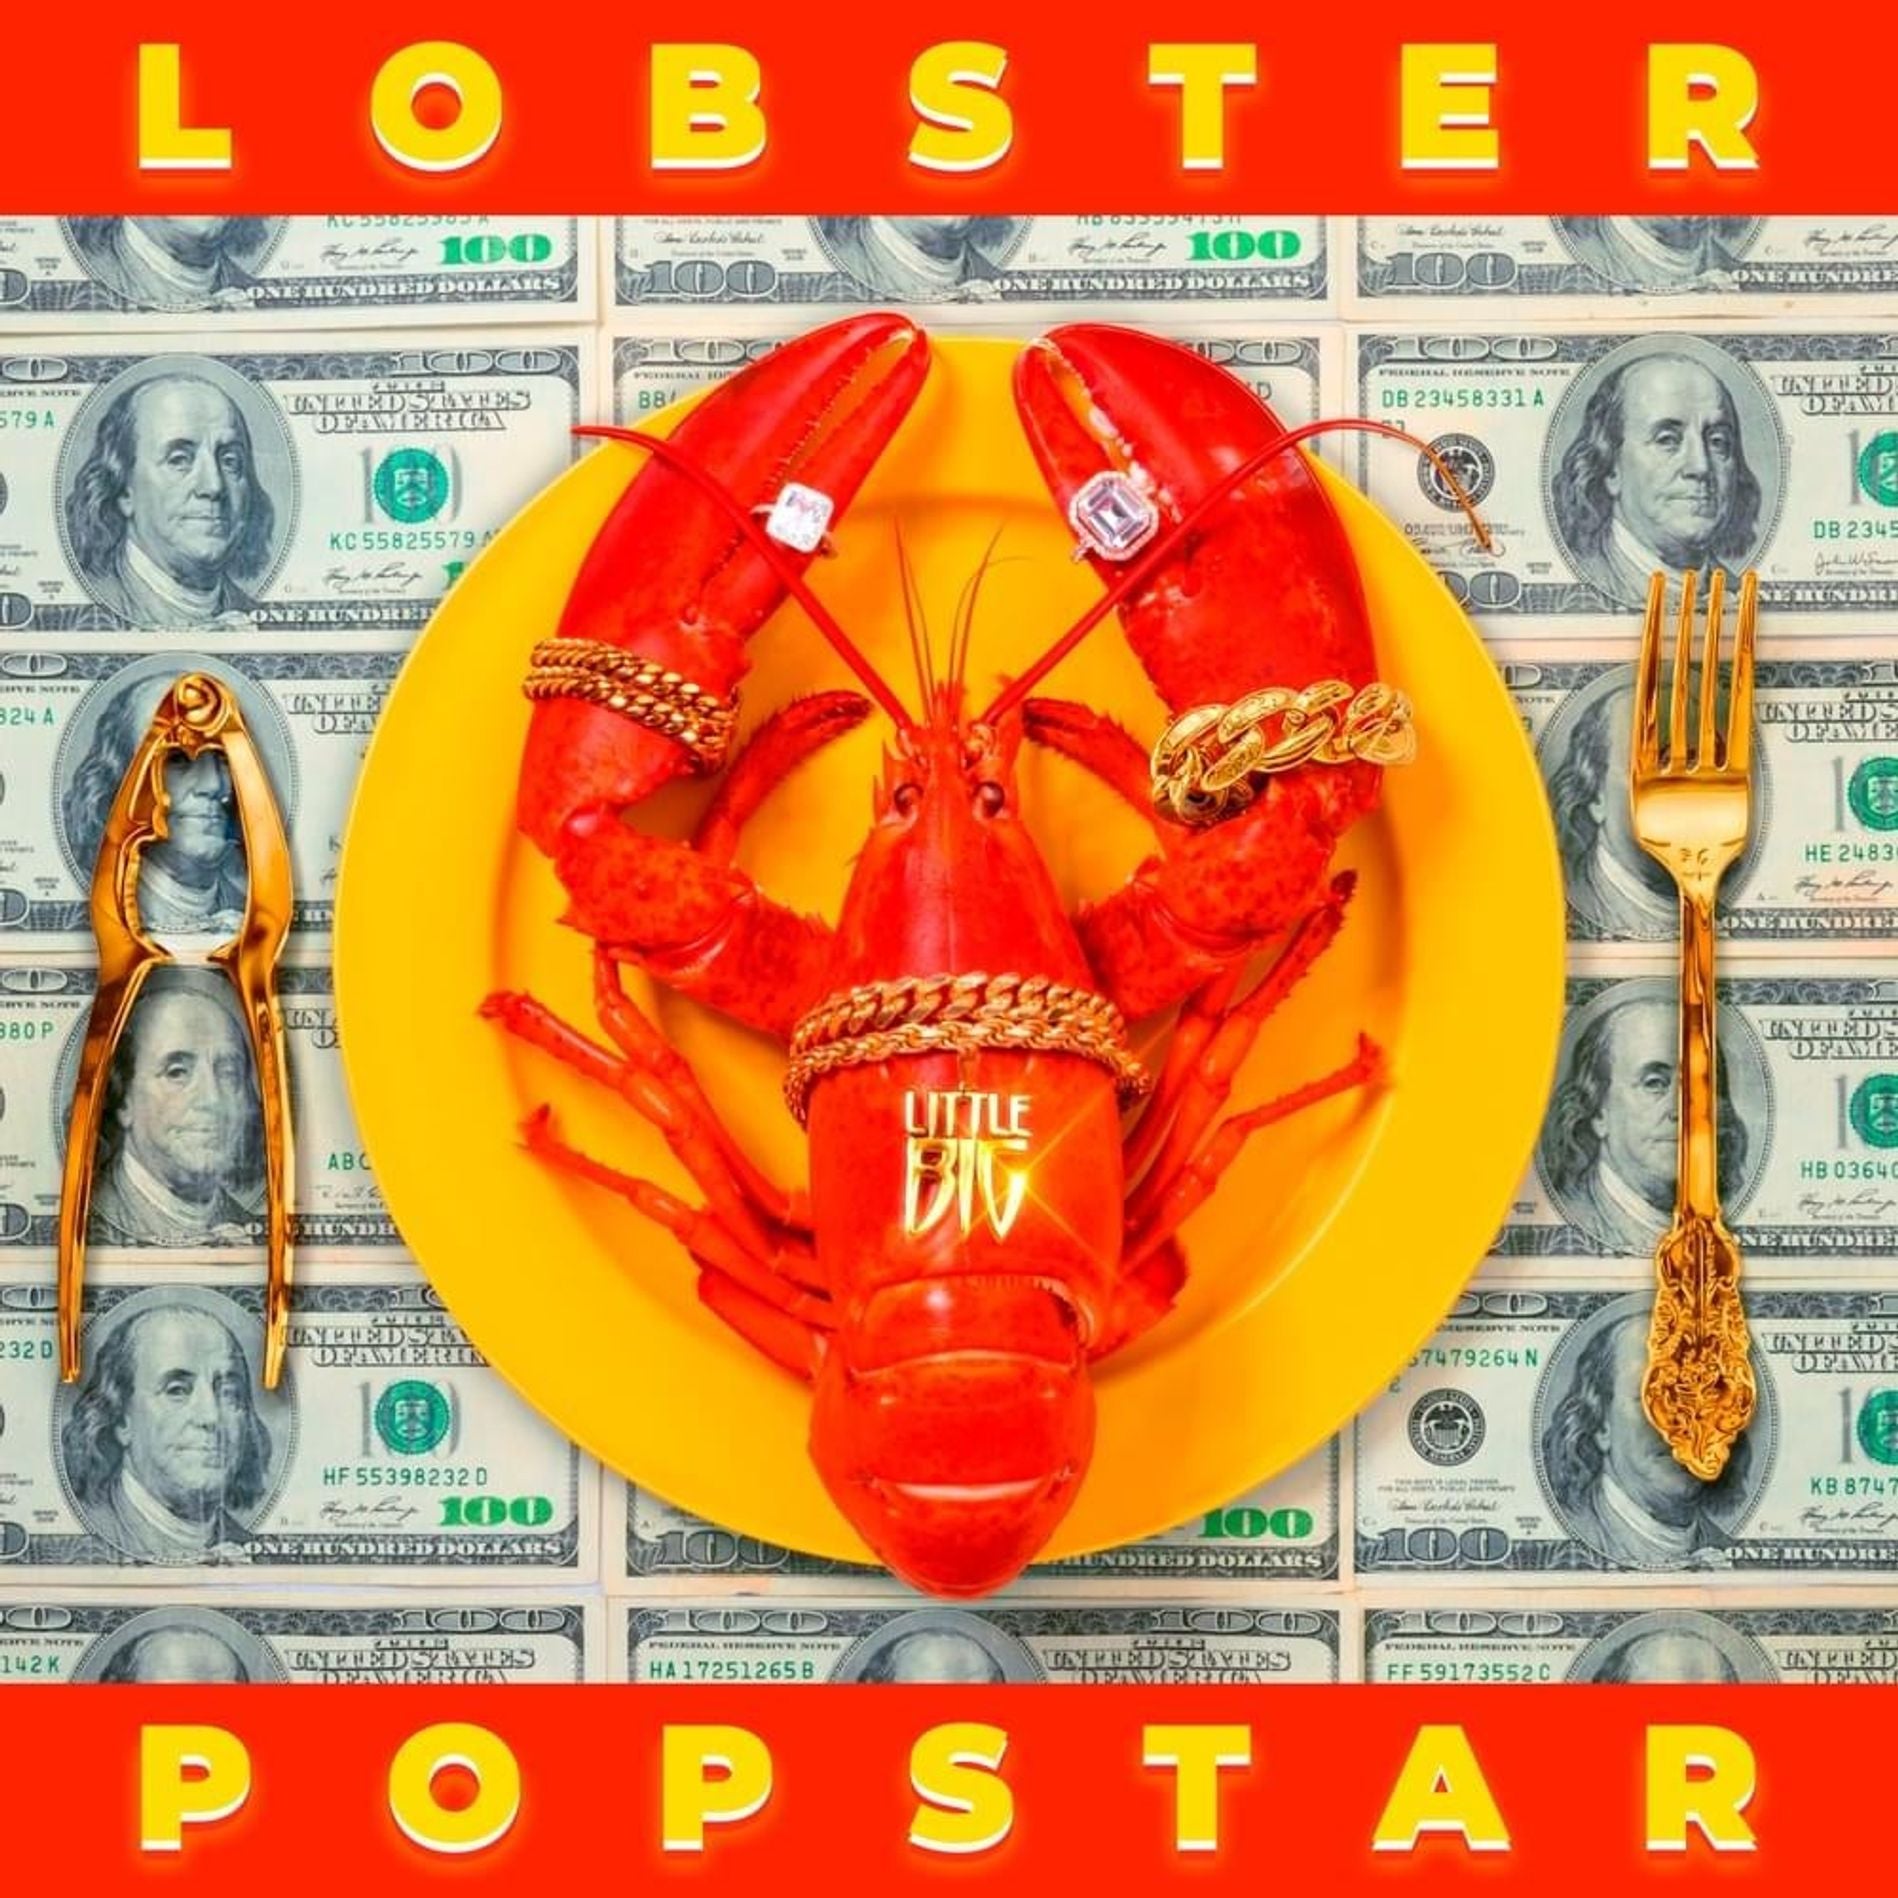 Little Big- Lobster Popstar